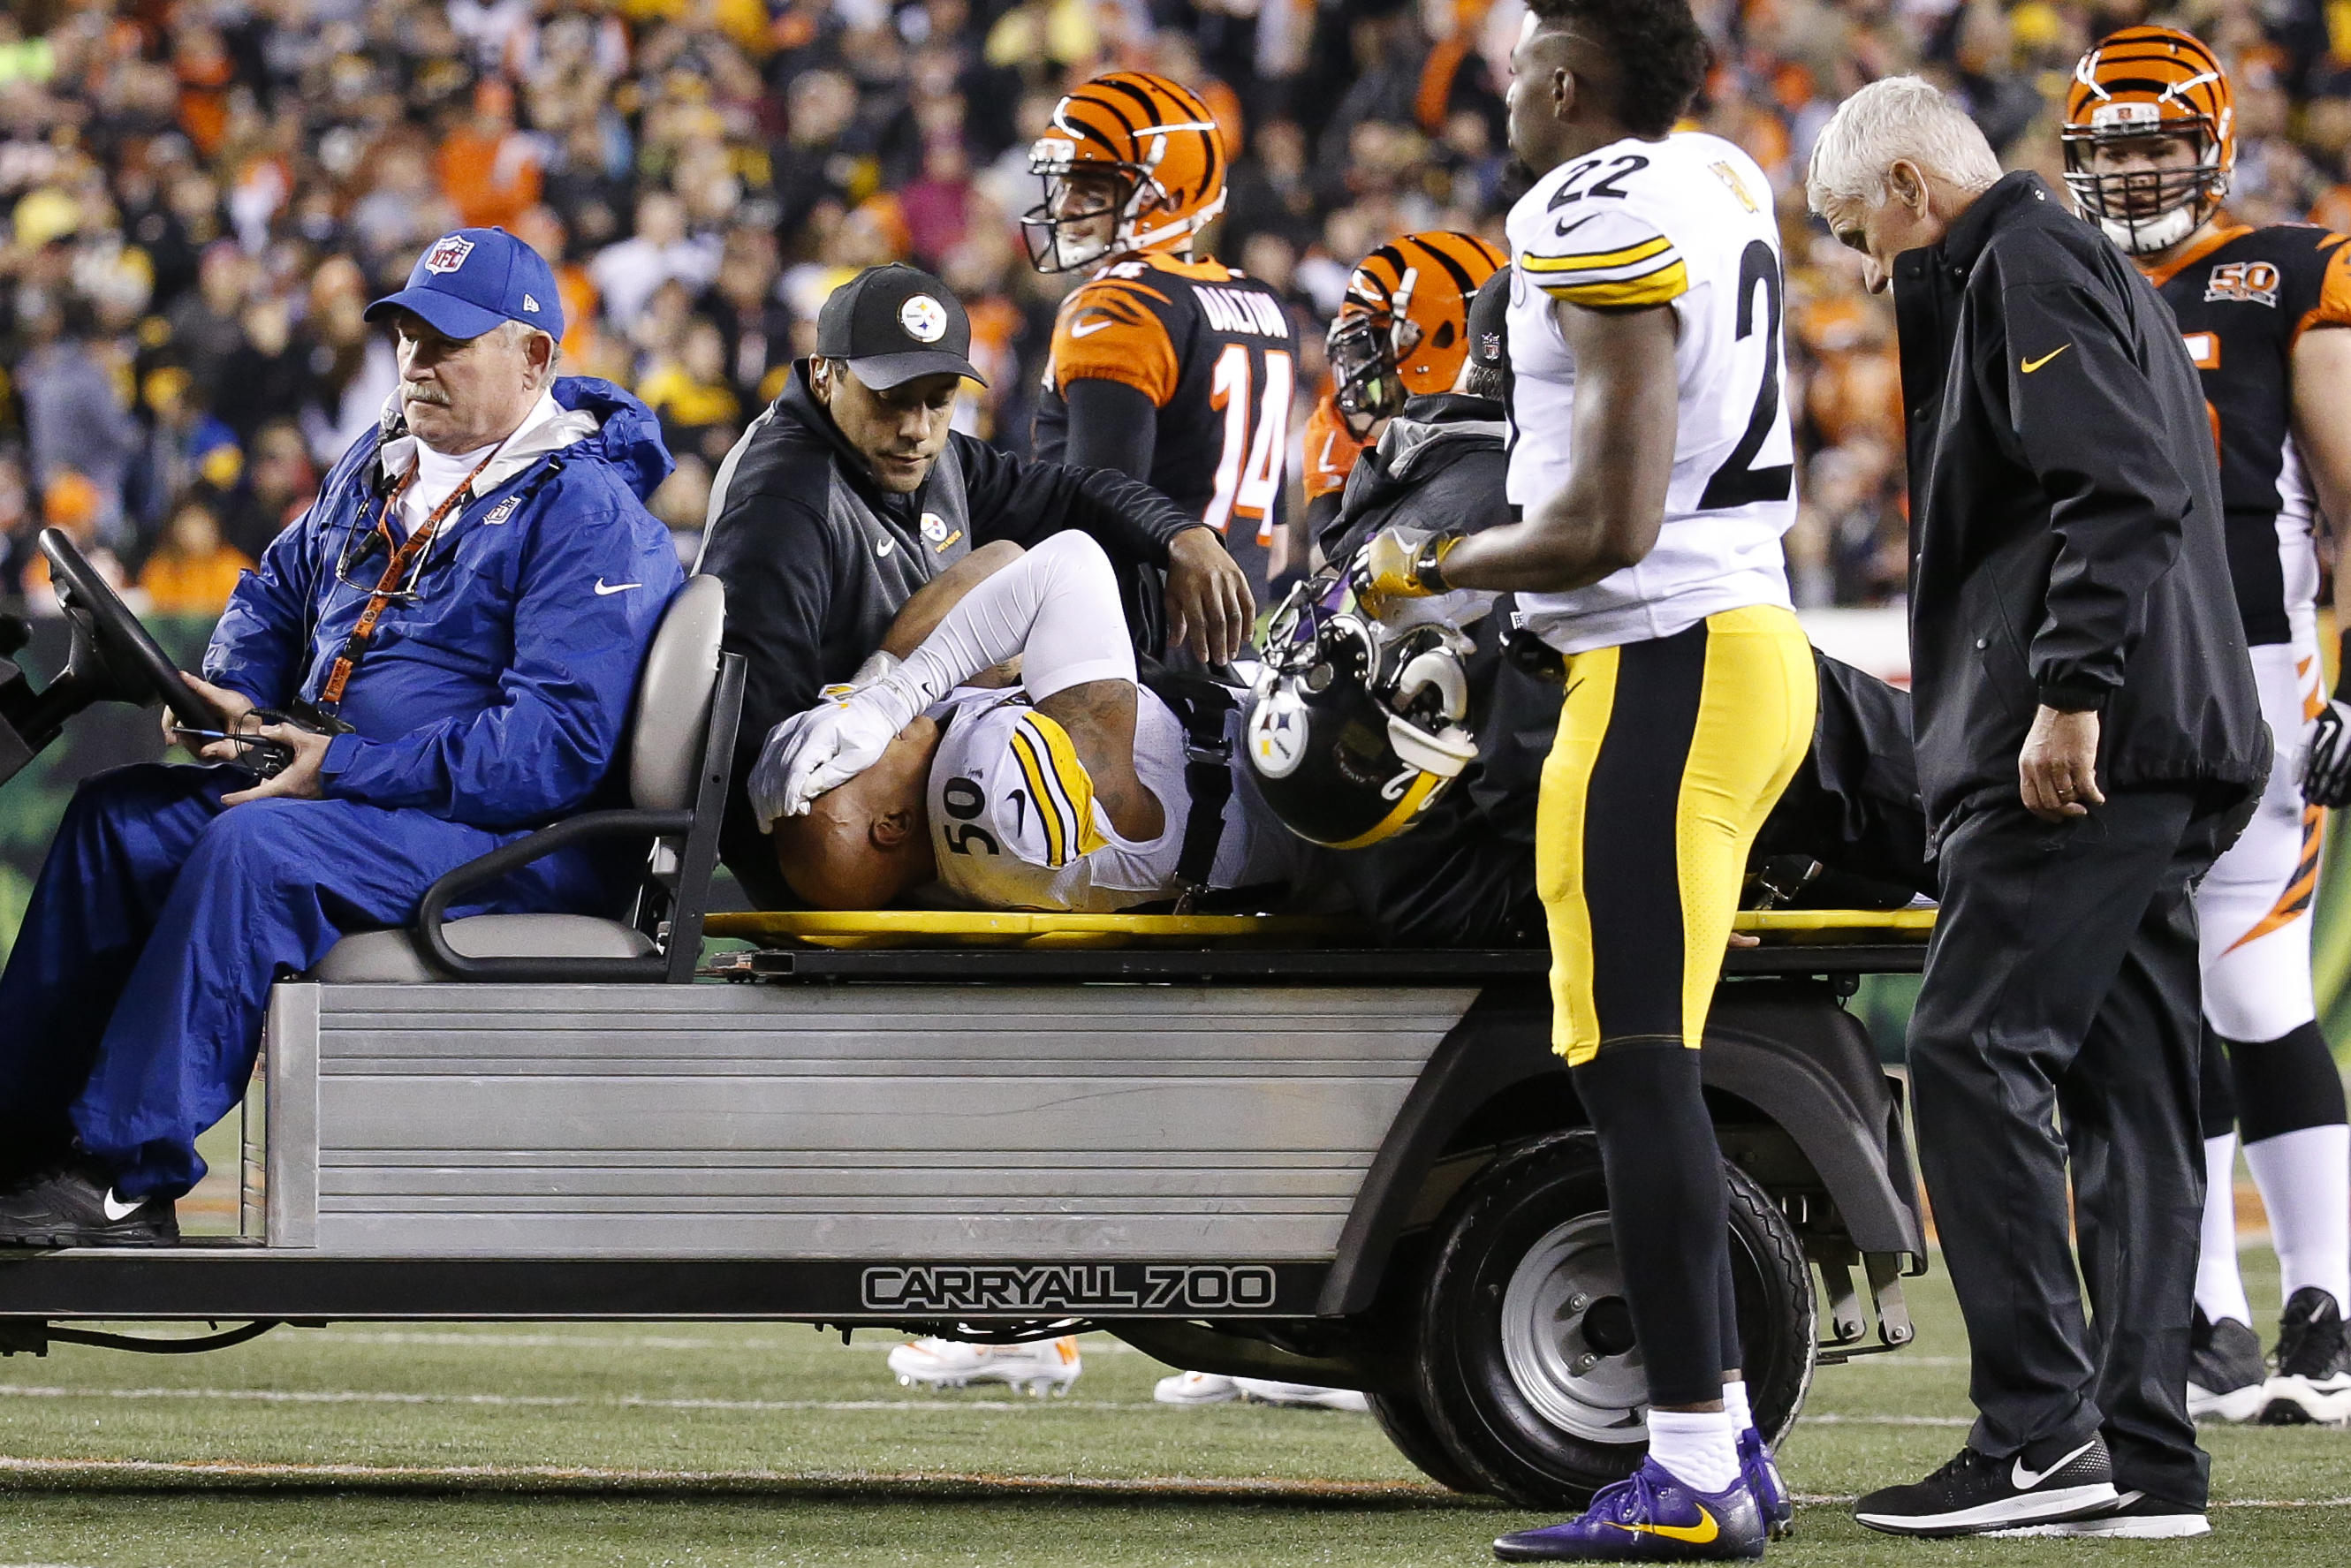 Steelers' Ryan Shazier, Bengals' Vontaze Burfict injured in Pittsburgh win  - CBS News